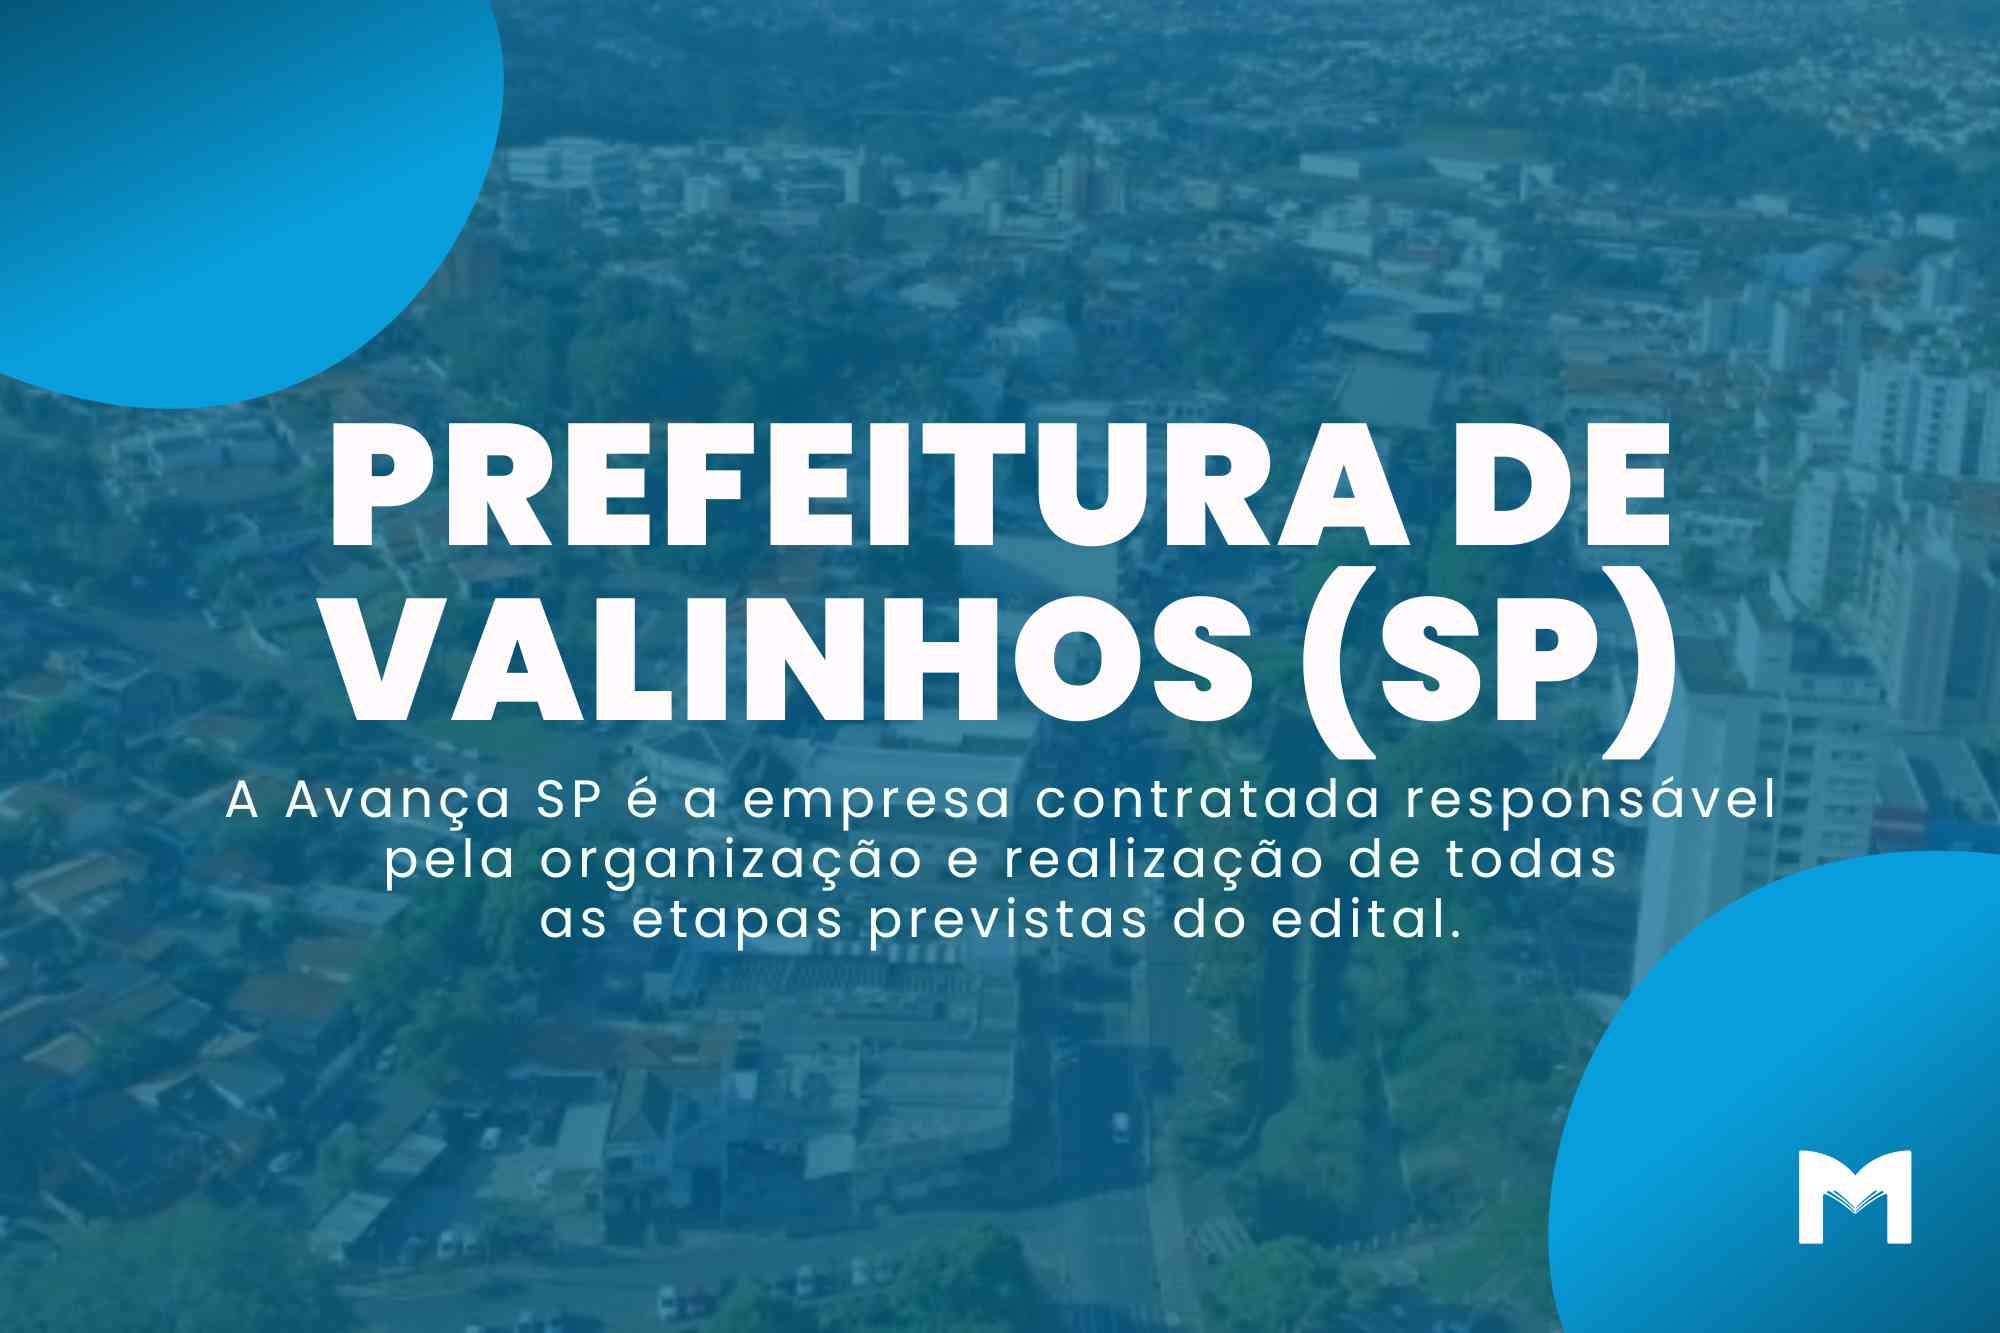 Seletivo Prefeitura de Valinhos SP: Edital para Agente Comunitário de Saúde!